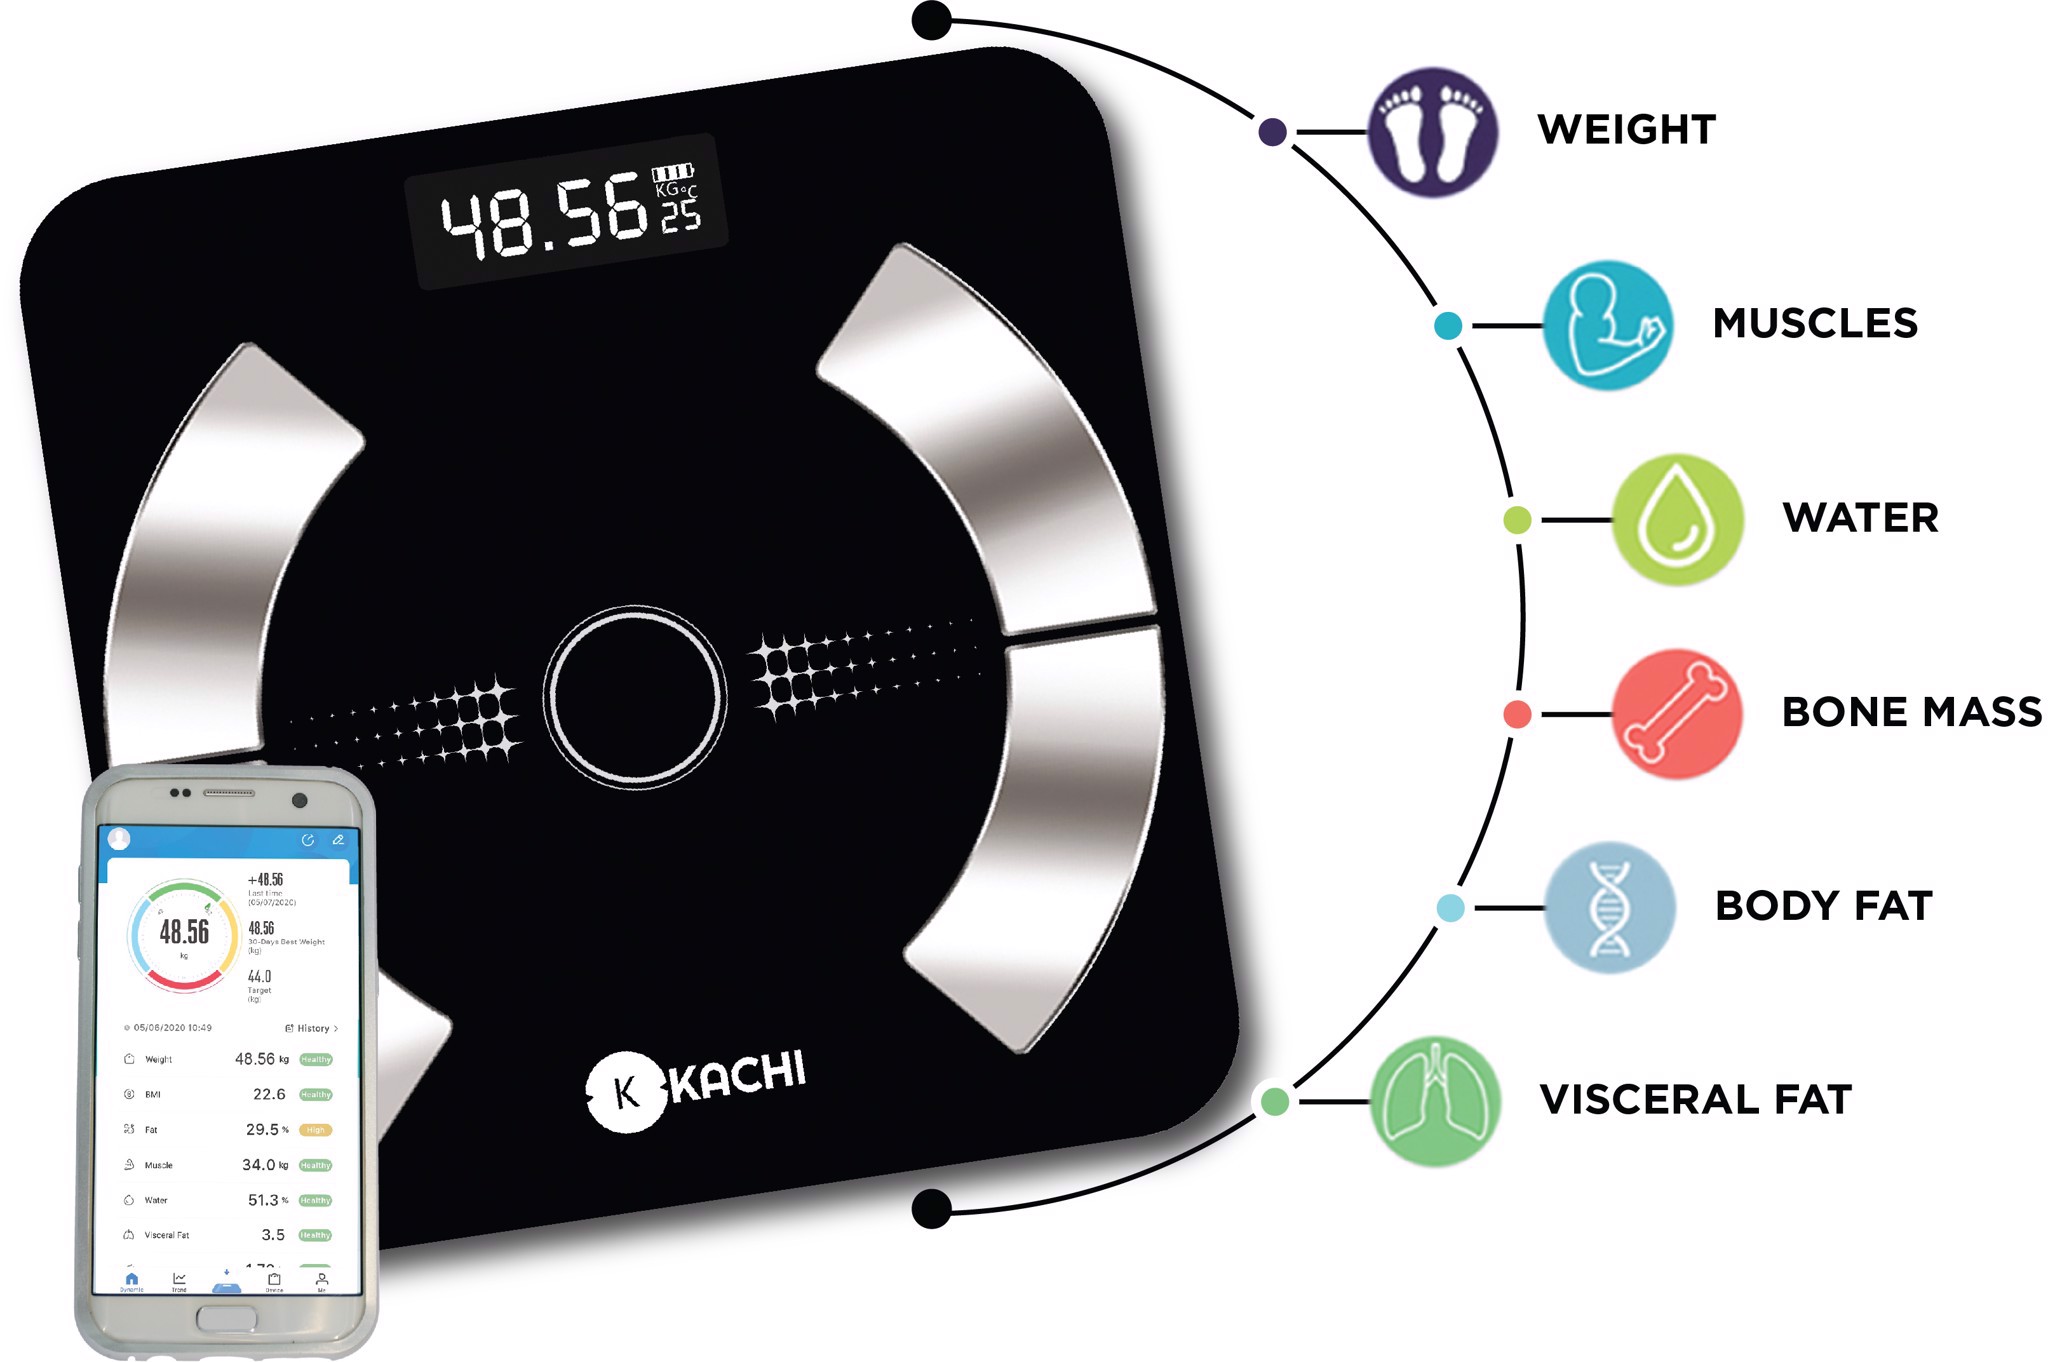 Cân điện tử bluetooth phân tích chỉ số cơ thể Kachi MK223 - Màu đen - Hàng chính hãng